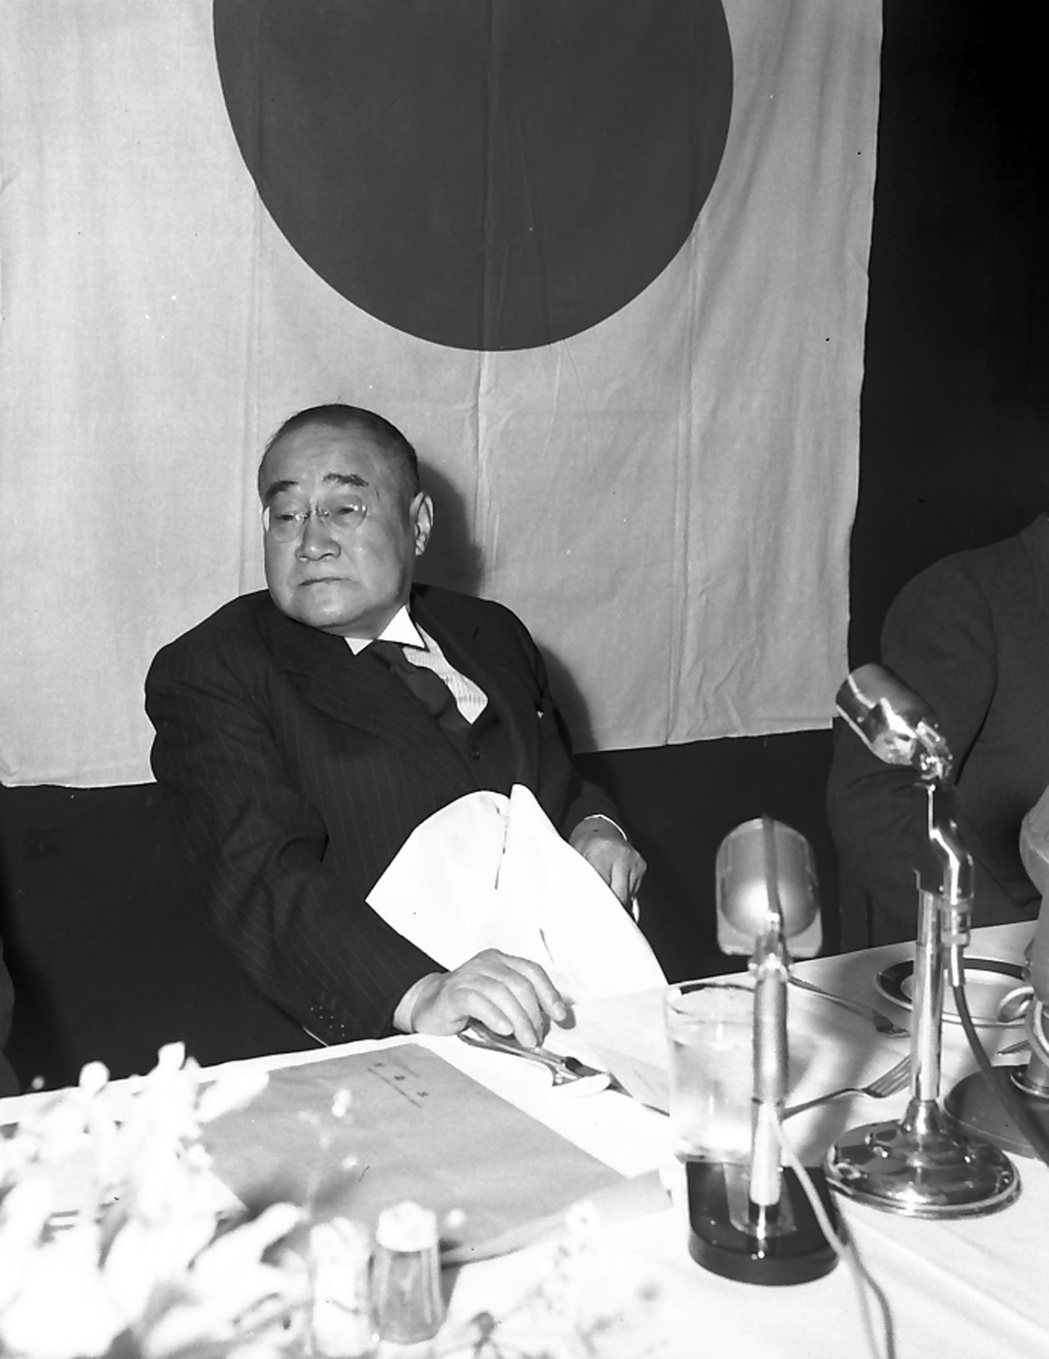 然而吉田茂被軍部勢力逮捕的經歷，卻意外讓他真正踏入日本政壇，外交官搖身一變為黨魁...